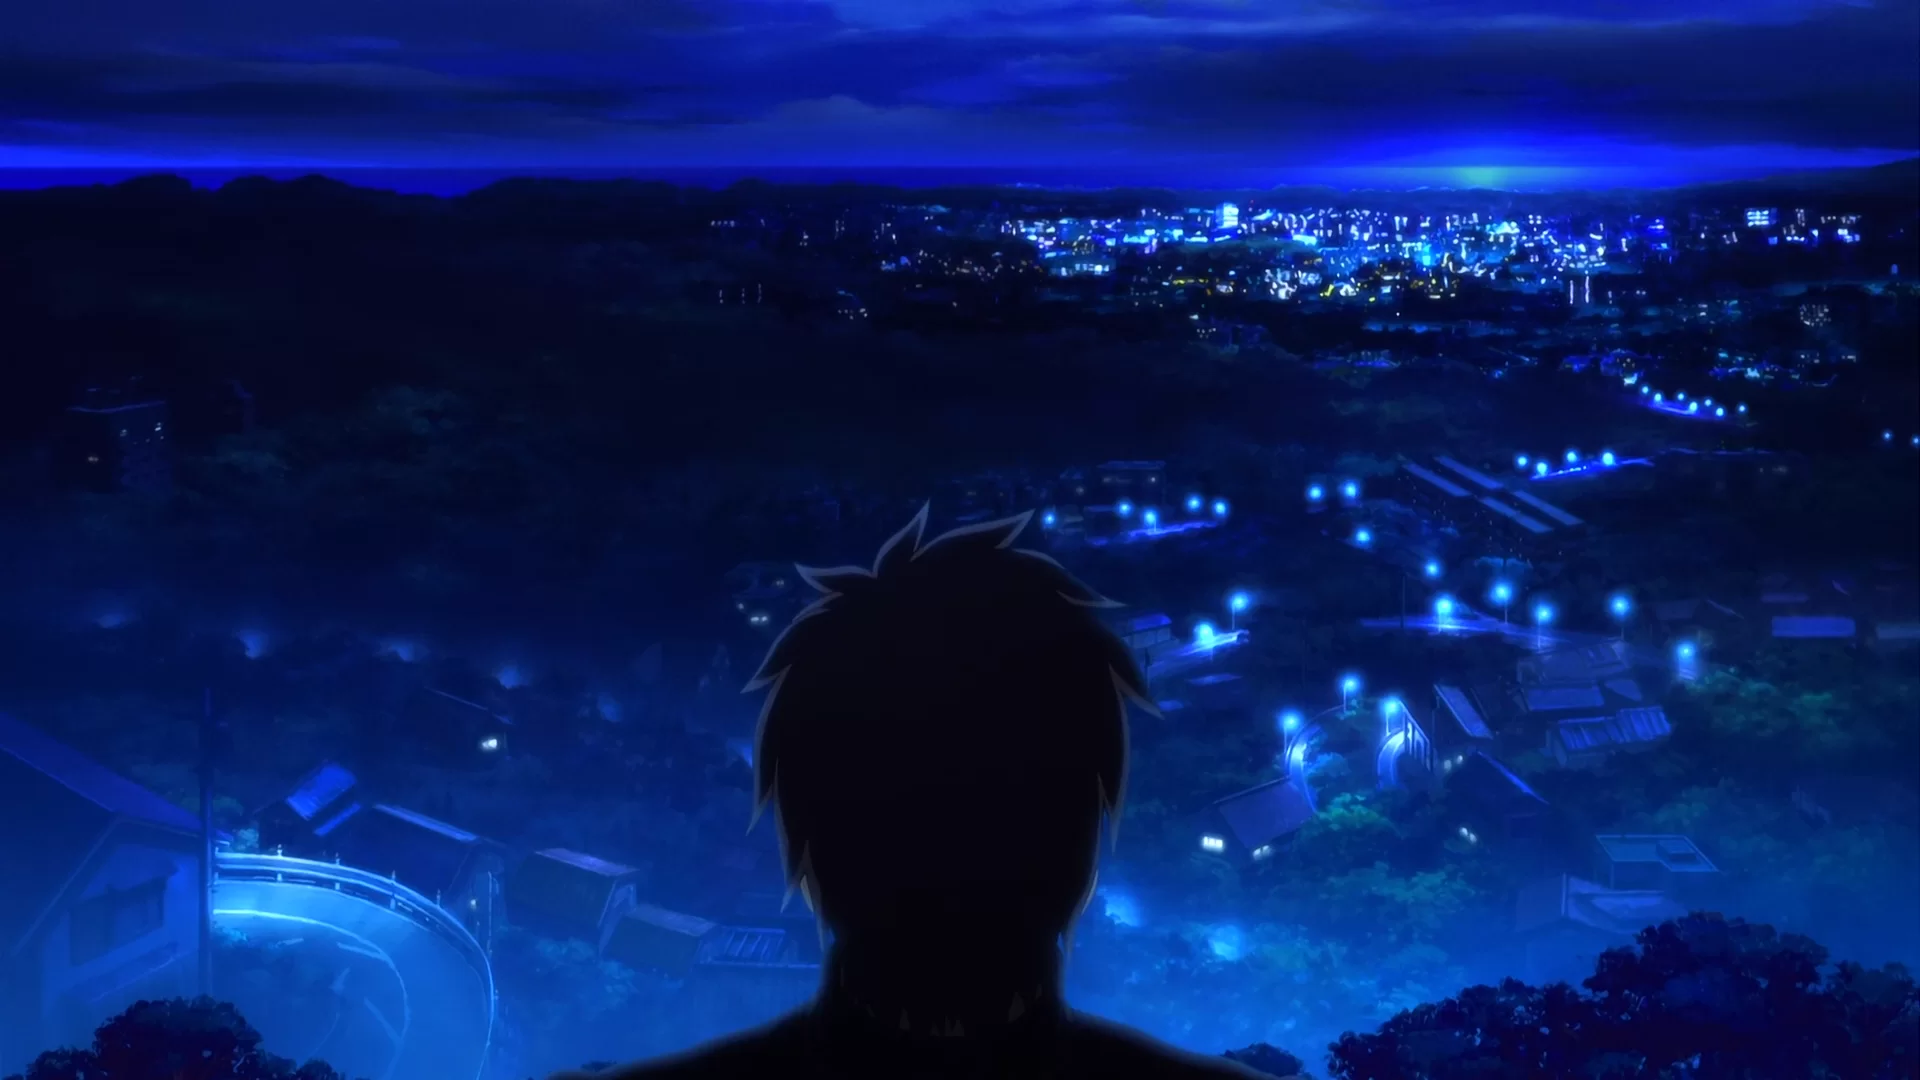 Minaturka 2 odcinka anime Fate/Zero